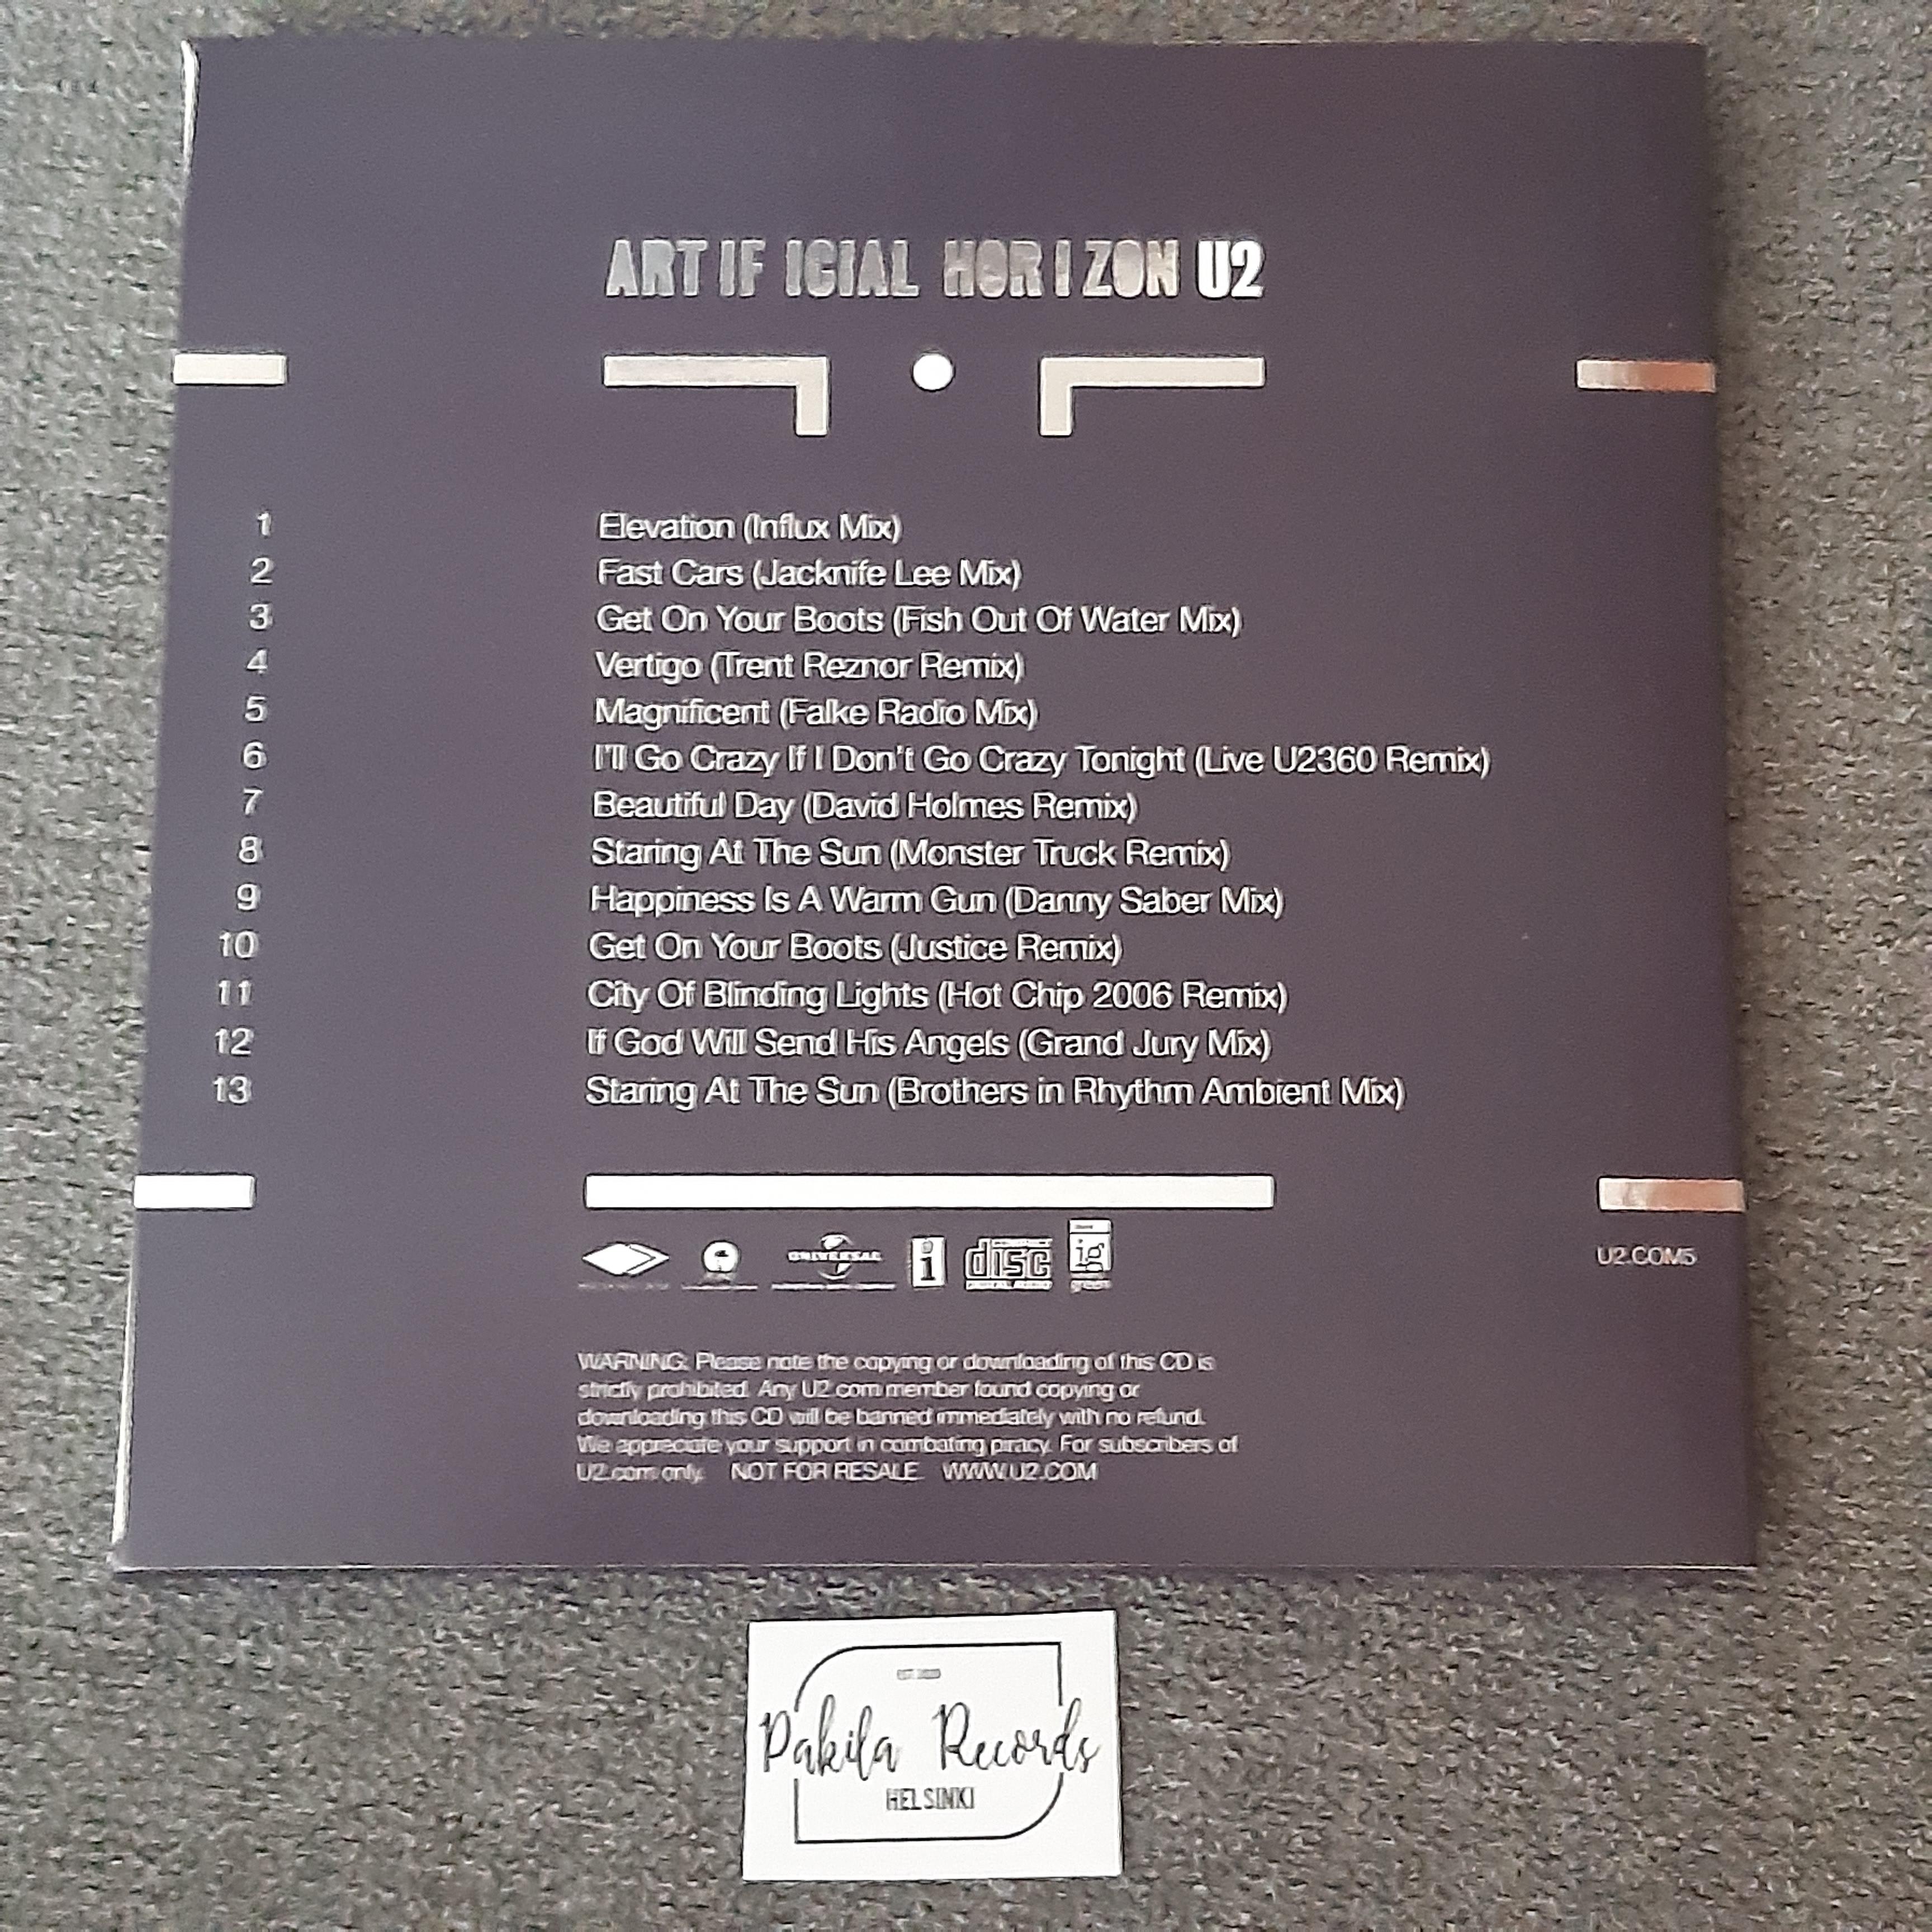 U2 - Artficial Horizon - CD (käytetty)